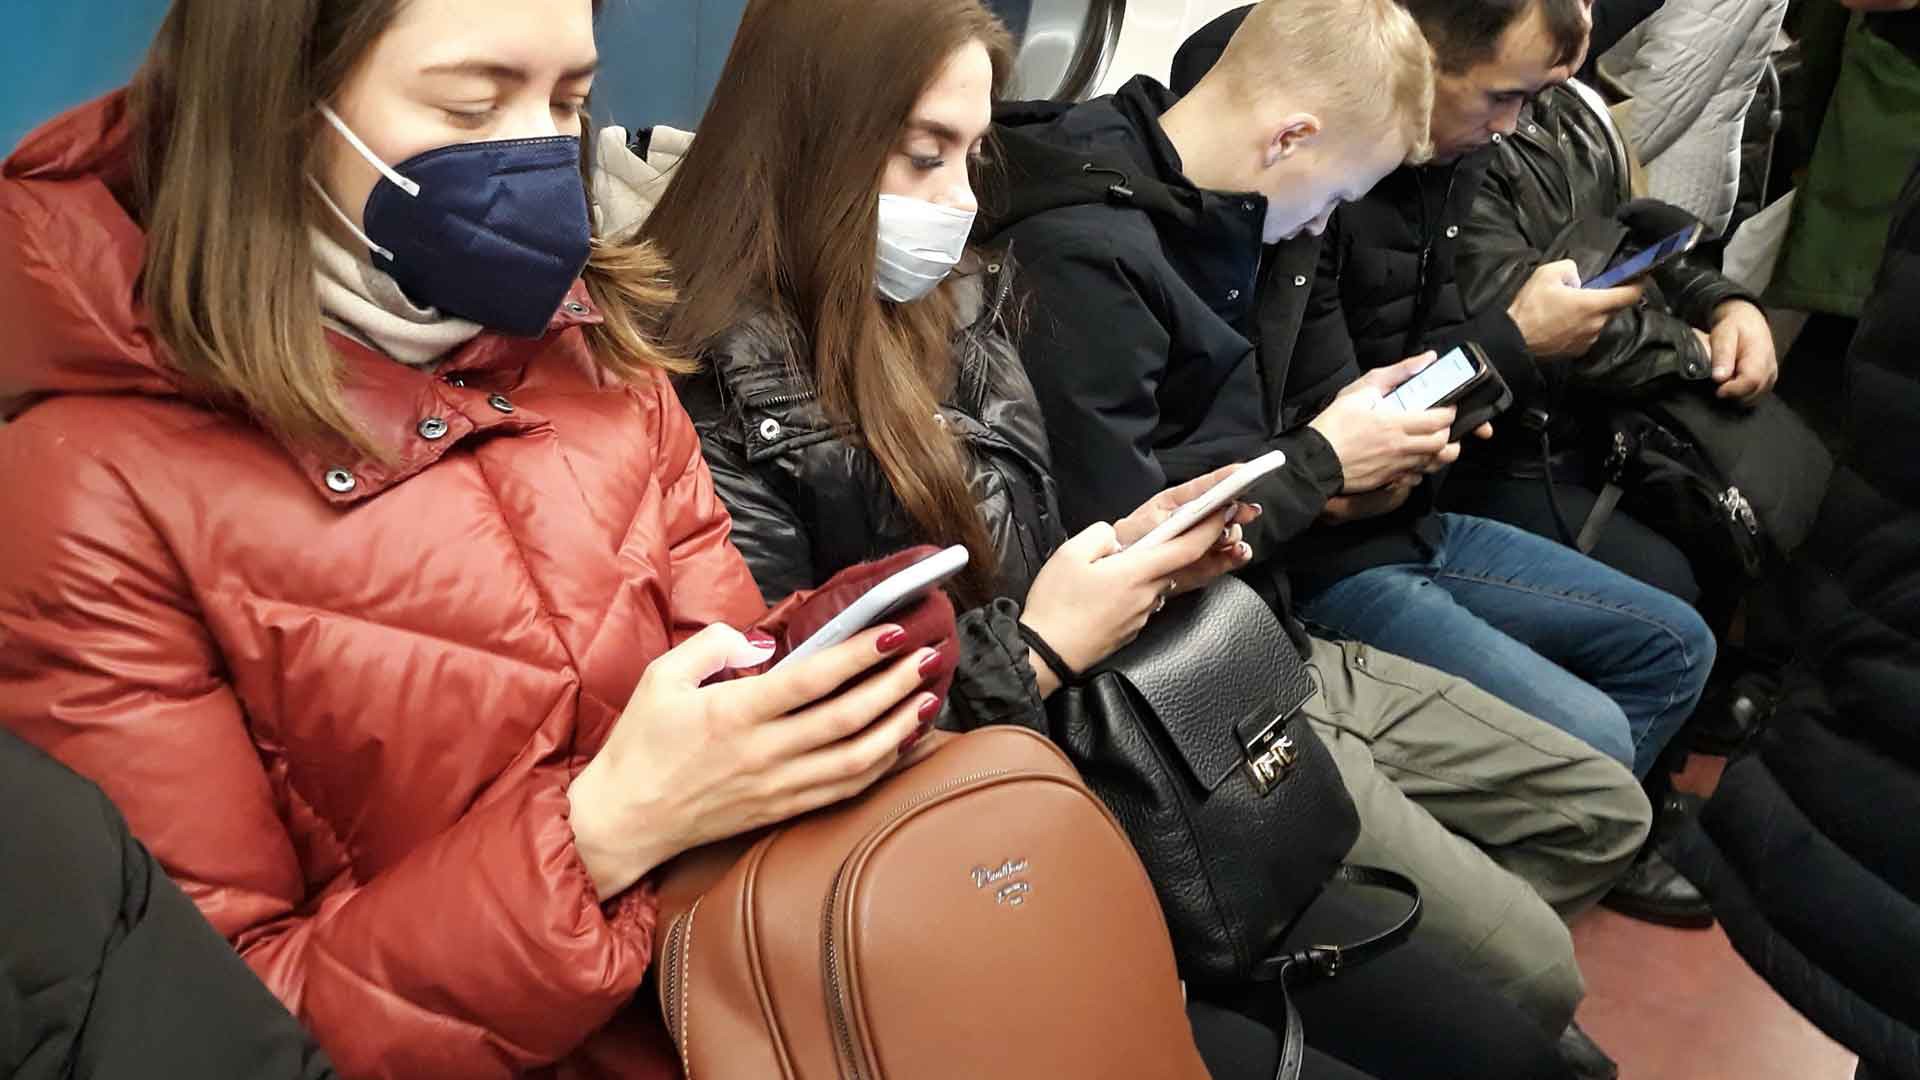 Dailystorm - Учения по устойчивости суверенного рунета отложили из-за коронавируса